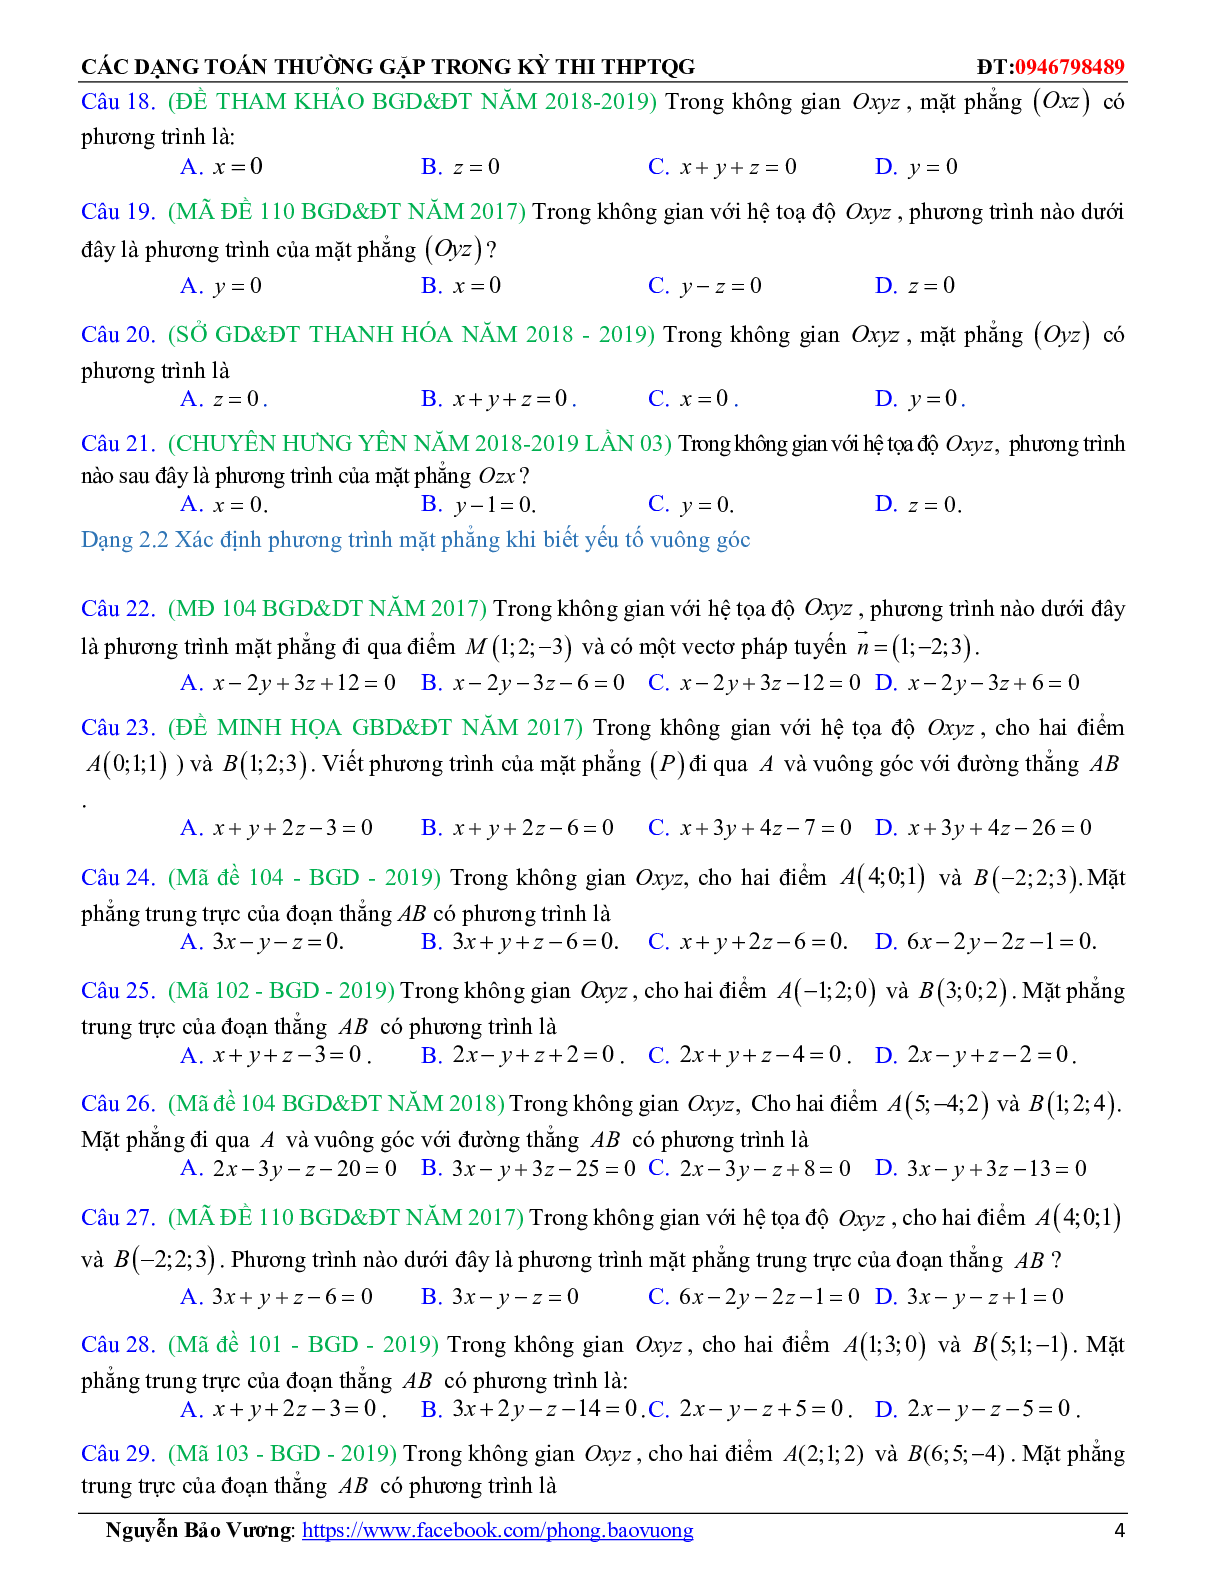 196 câu trắc nghiệm Phương trình đường thẳng có đáp án 2023 (trang 4)